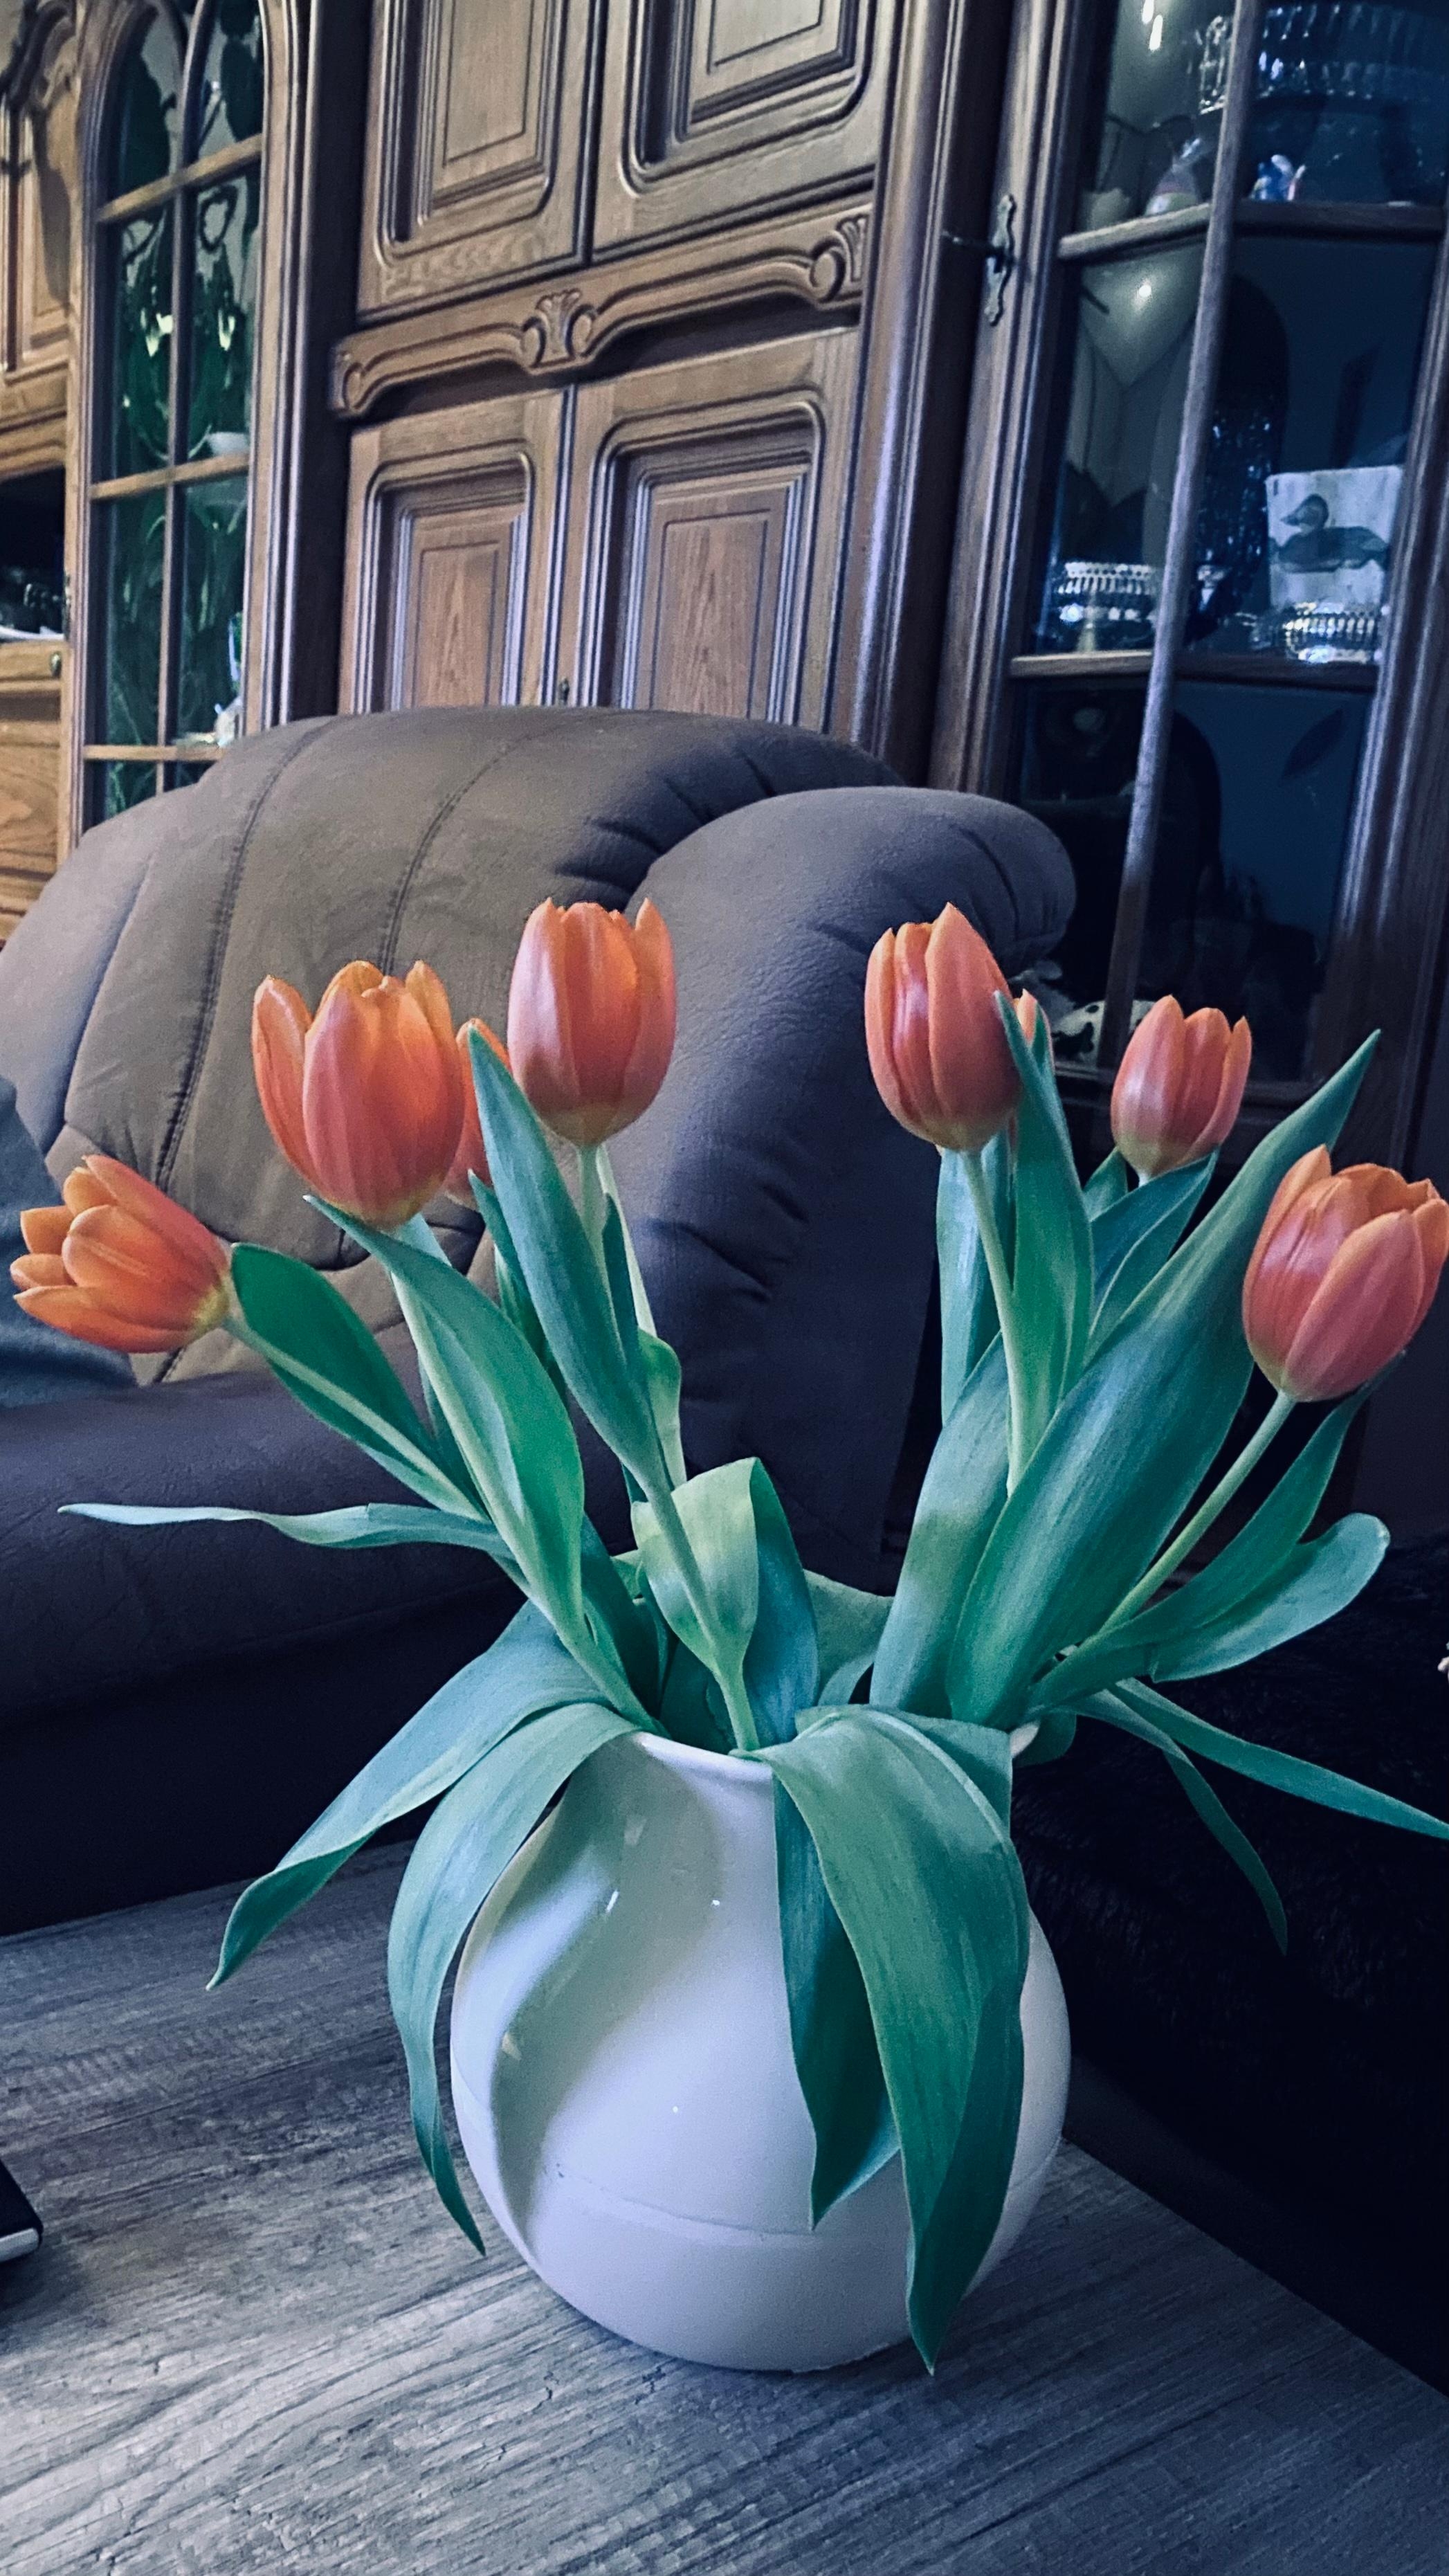 Heute vorab wieder den Frühling in die Wohnung geholt 😊 Tulpen 🌷 